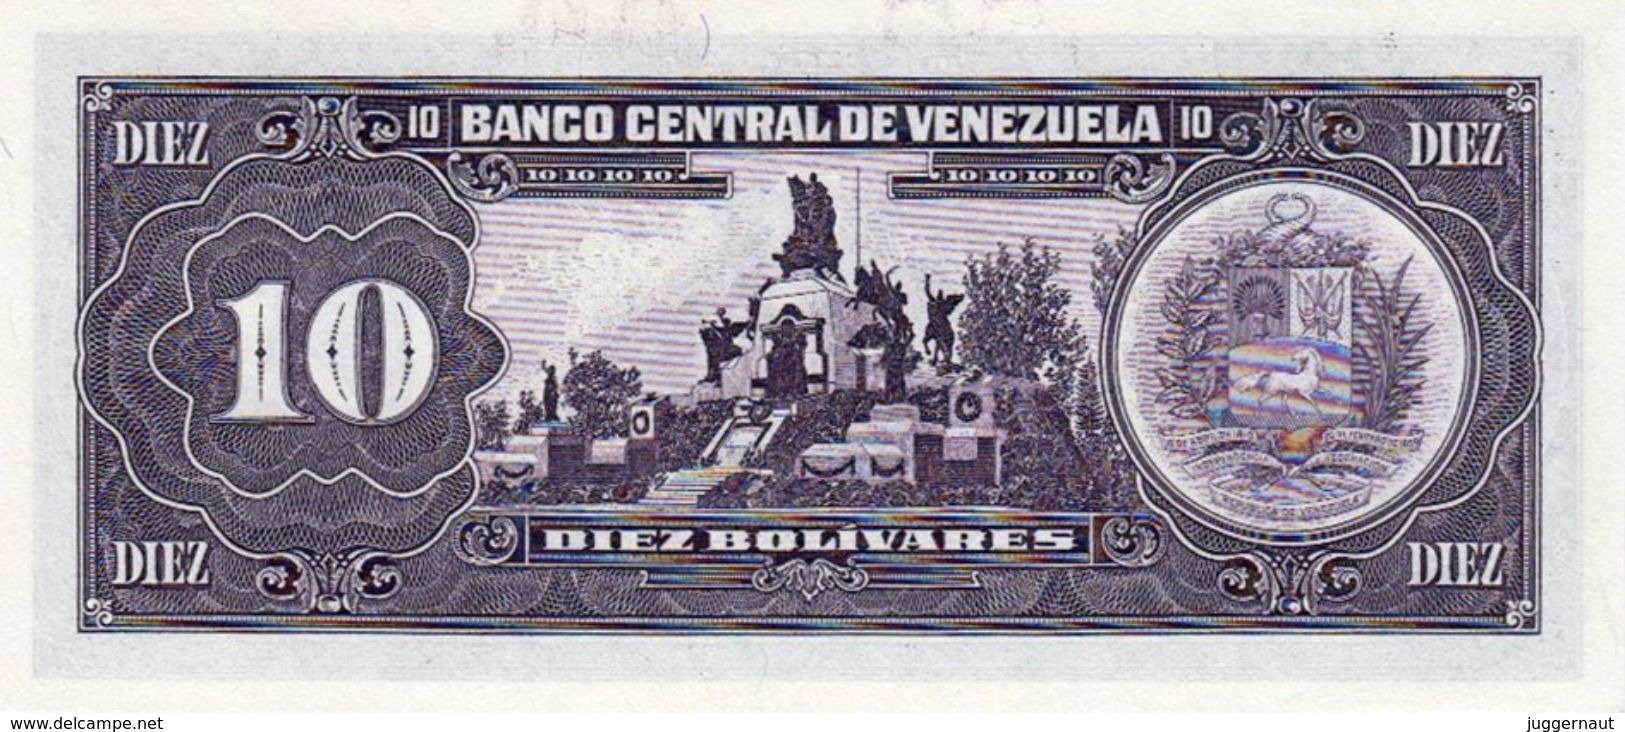 VENEZUELA 10 BOLIVIARES BANKNOTE 1995 PICK NO.61 UNCIRCULATED UNC - Venezuela